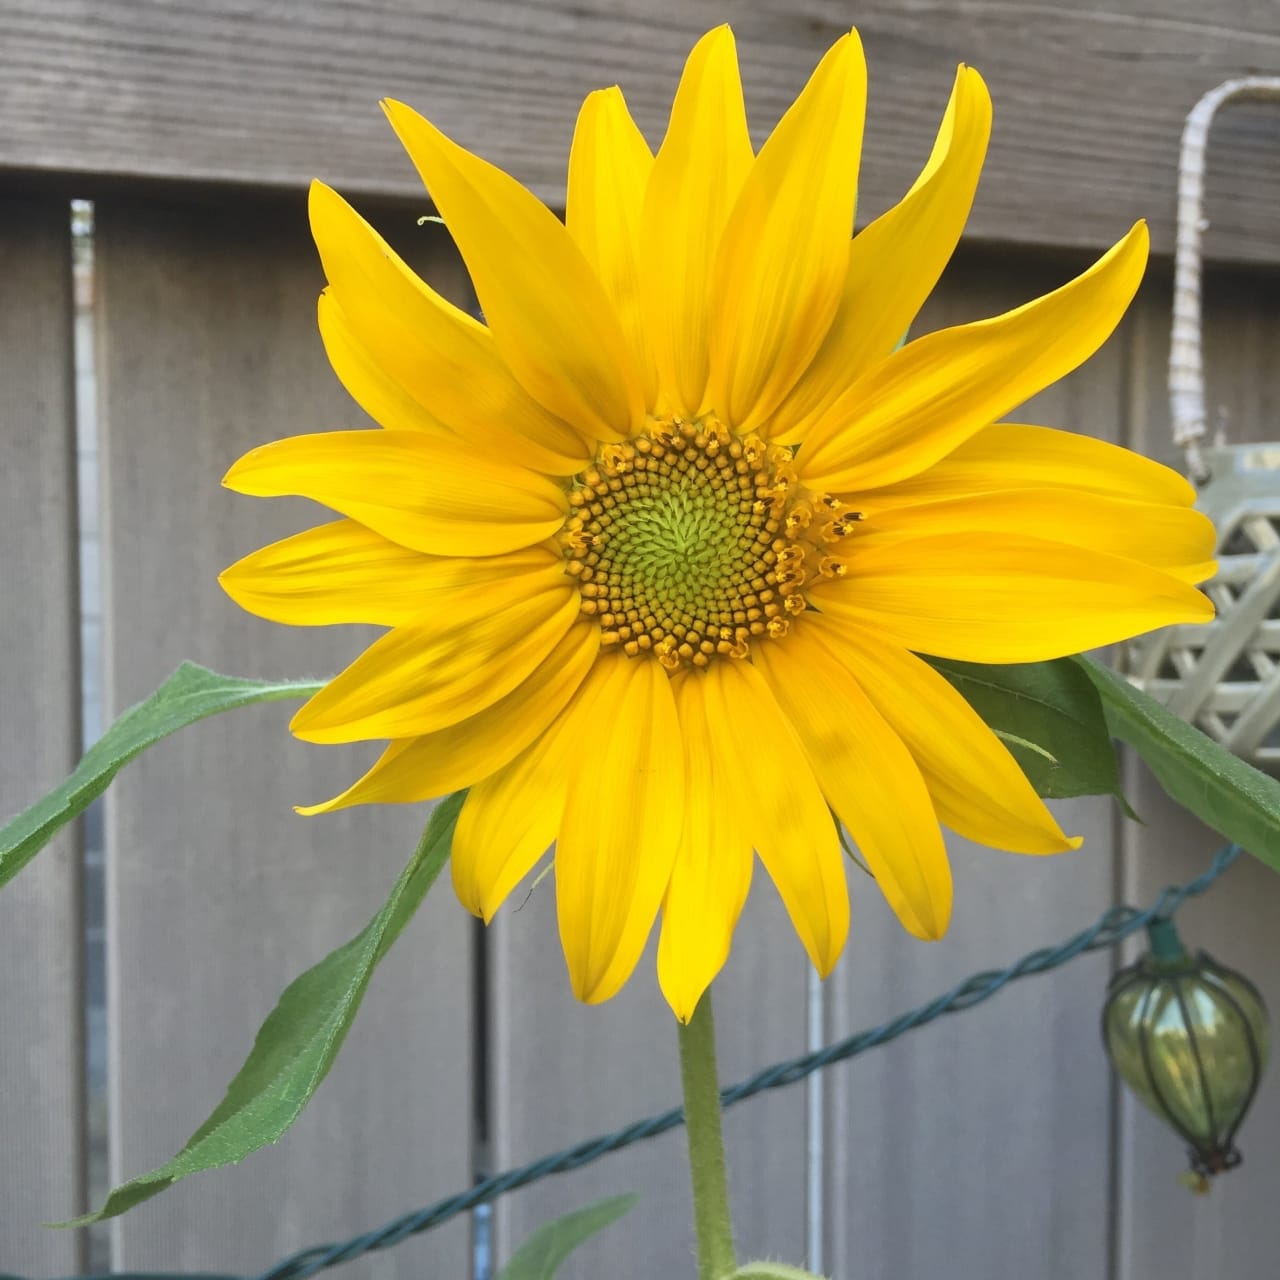 Wordless Wednesday: Sunflower on Katie Crafts; https://www.katiecrafts.com